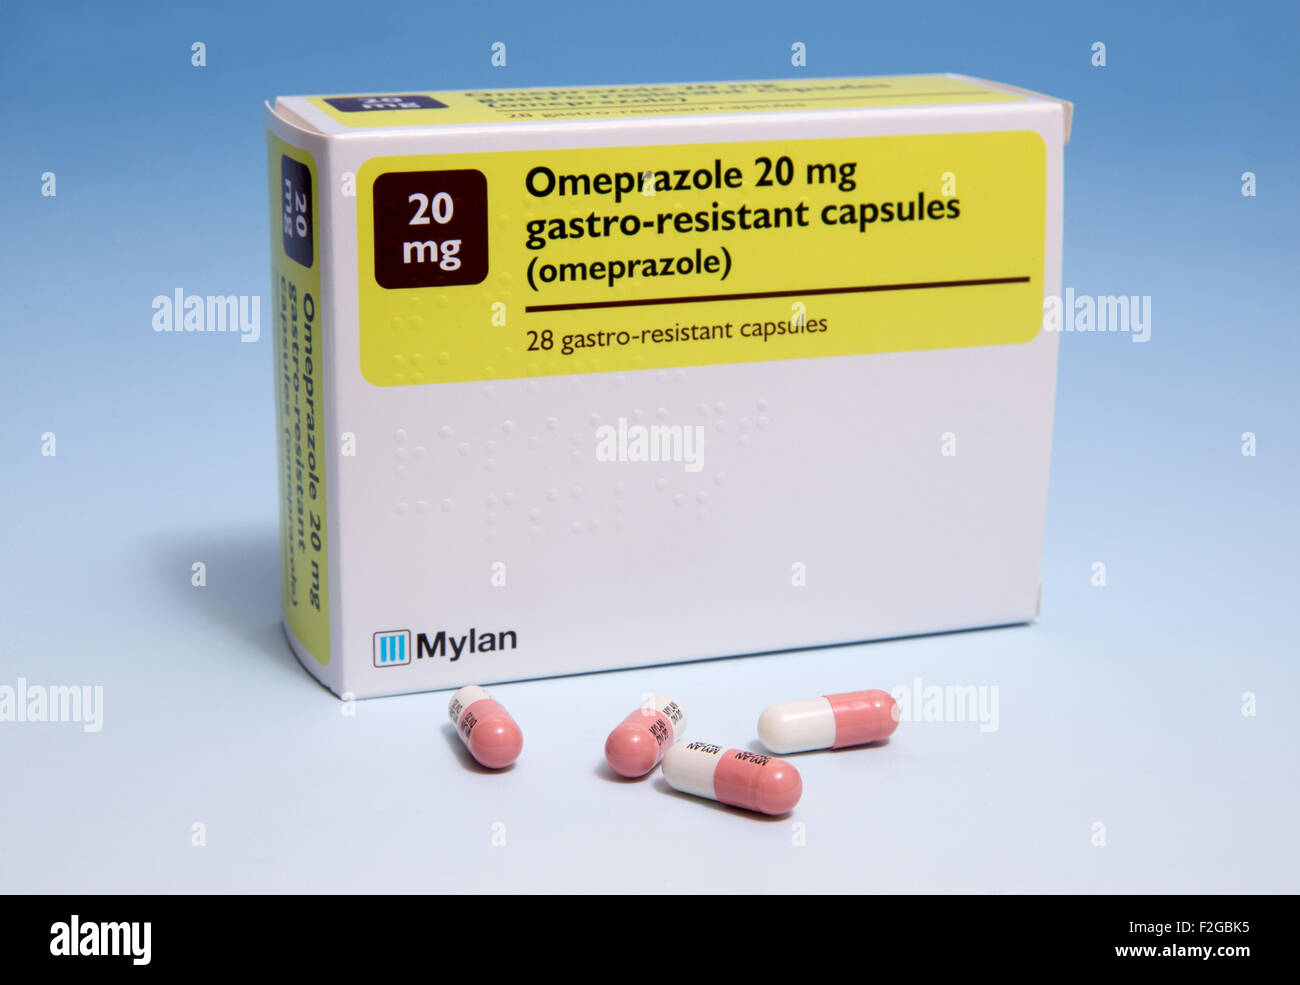 Confezione da 20 mg compresse di omeprazolo per aiutare nel trattamento delle ulcere dello stomaco-gastro-resistente Foto Stock